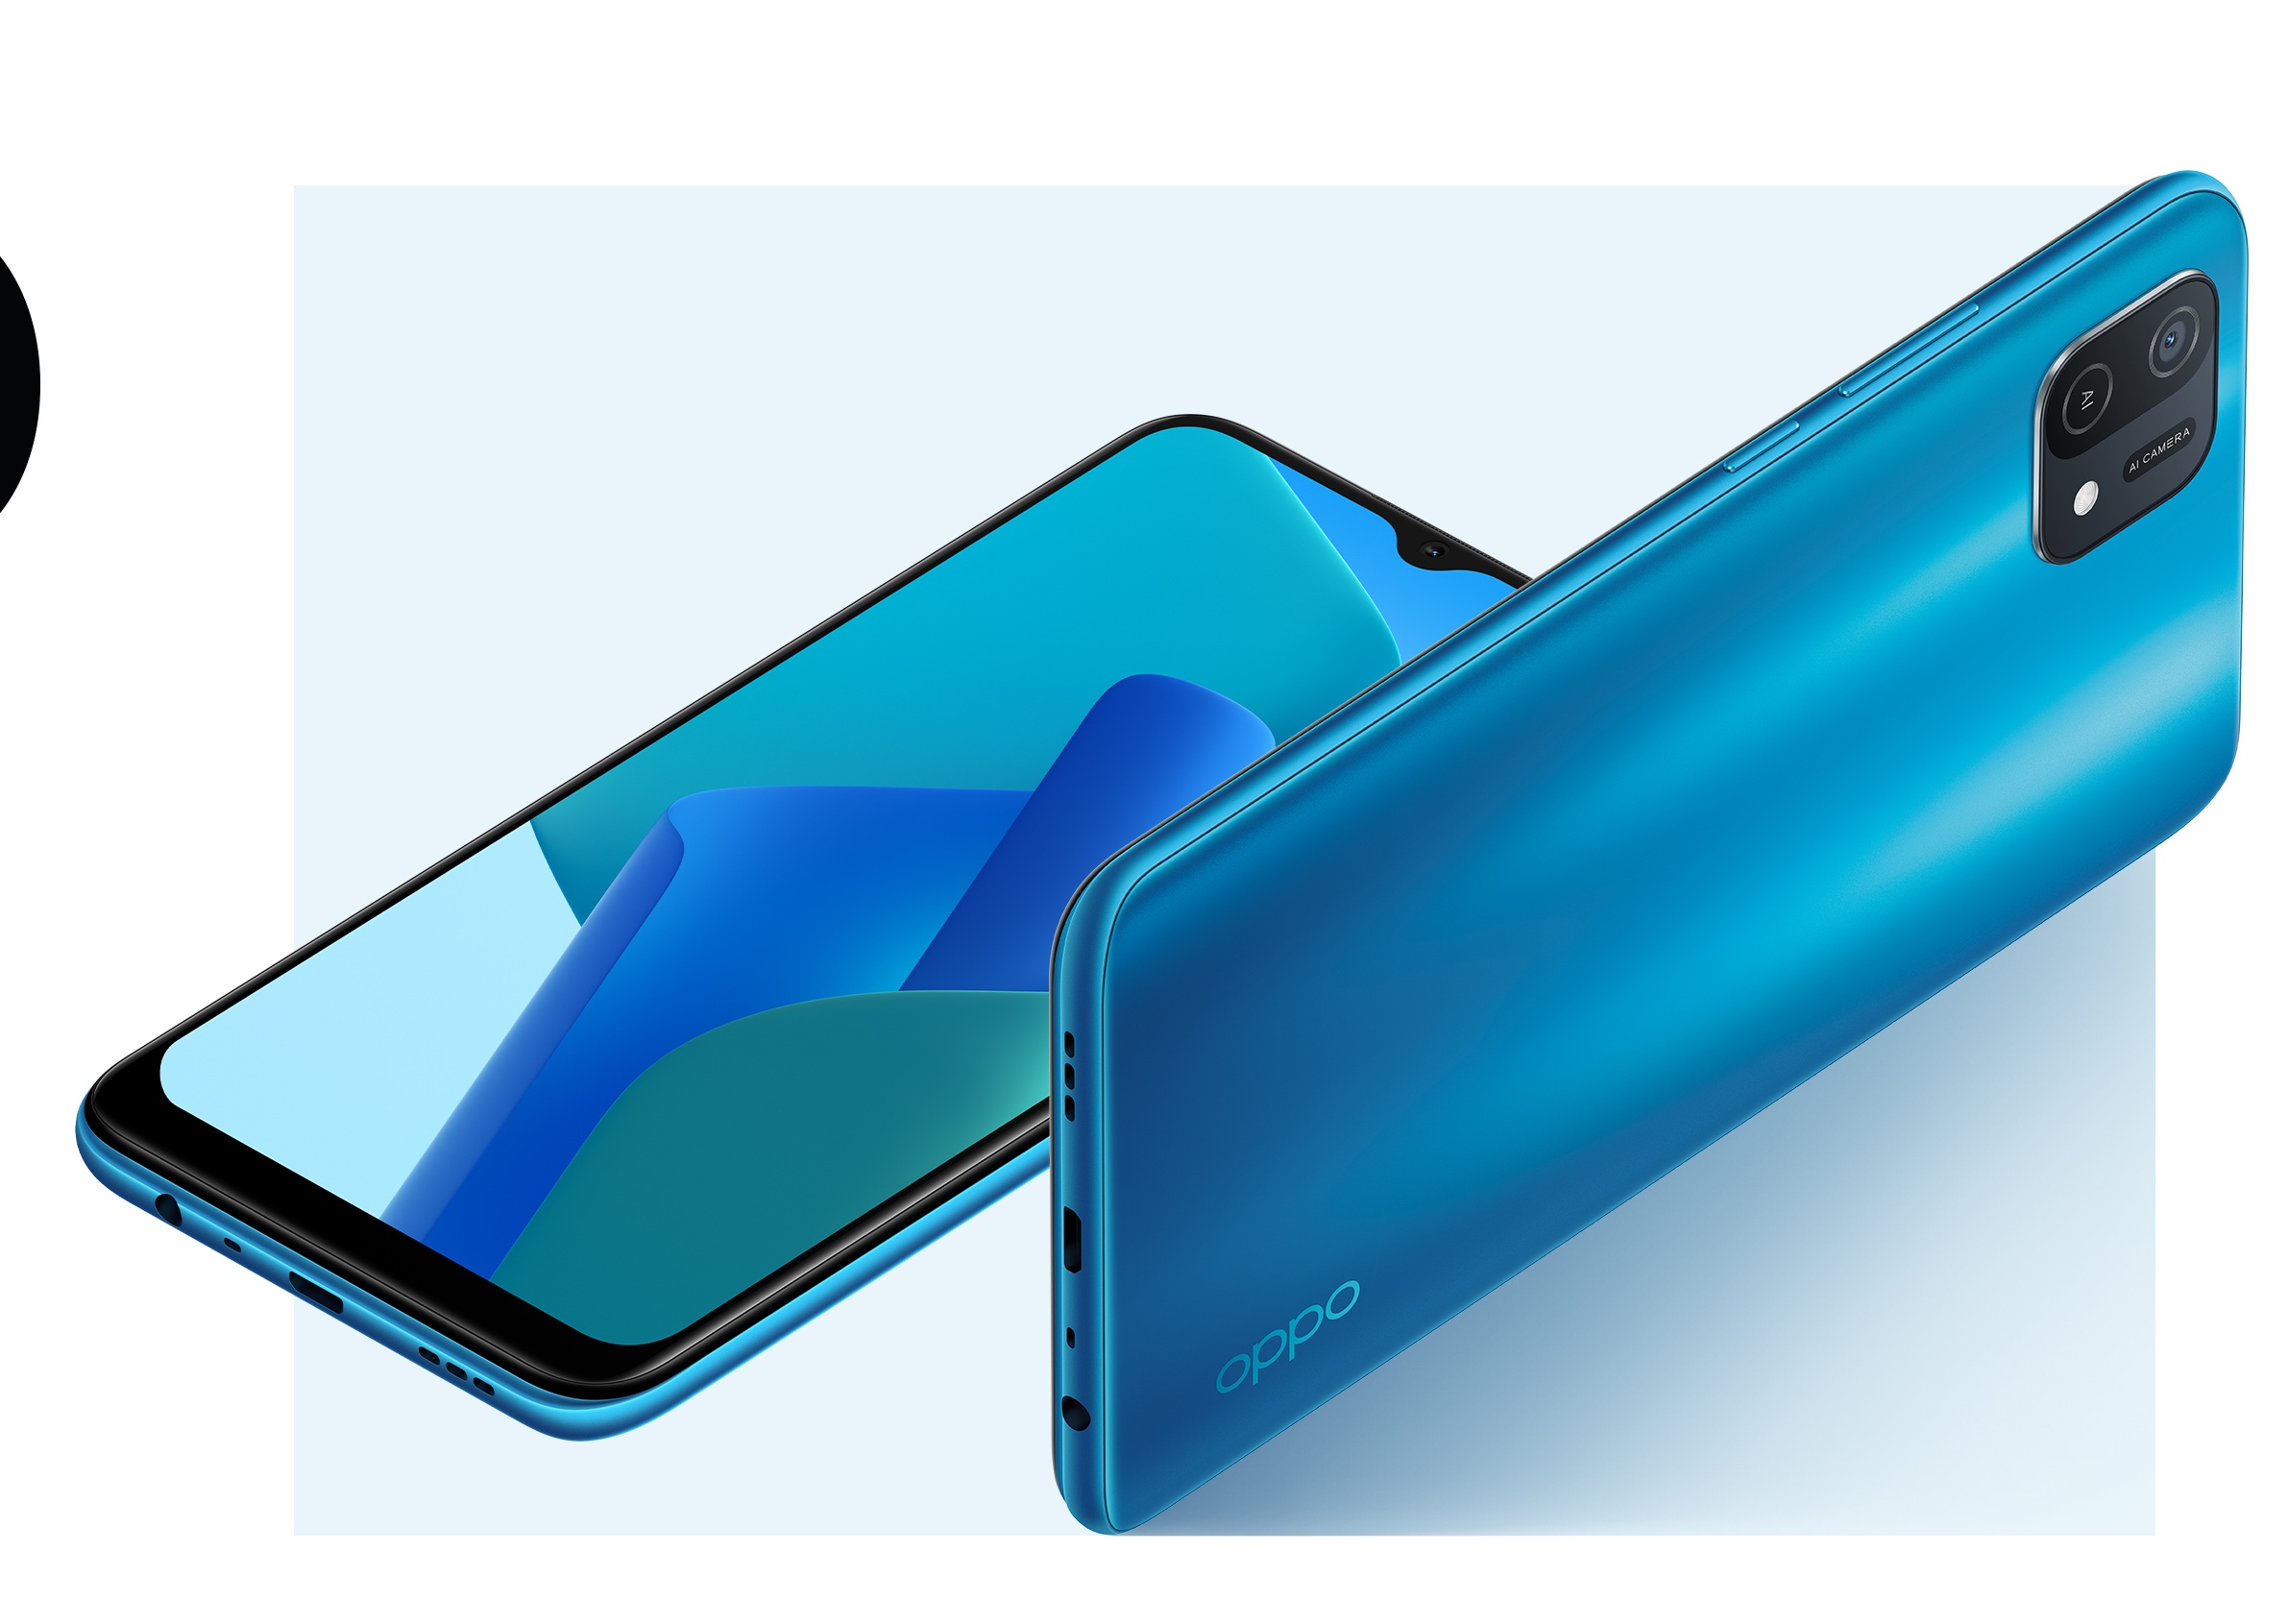  ओप्पो ने चीन में OPPO A1 Pro 5G स्मार्टफोन लॉन्च कर दिया है. यह फोन 6.7 इंच के फुल-एचडी+ डिस्प्ले को सपोर्ट करता है. कंपनी इसमें स्नैपड्रैगन 695 SoC प्रोसेसर ऑफर कर रही है. OPPO A1 Pro 5G में 108MP का डुअल रियर कैमरा यूनिट है. आगे की तरफ, डिस्प्ले में एक पंच-होल कटआउट है जिसमें 16MP का सेल्फी कैमरा दिया गया है. फोन में 4,800mAh की बैटरी दी गई है और यह 67W फास्ट चार्जिंग को सपोर्ट करती है. कंपनी ने इसे तीन कलर ऑप्शन में पेश किया है.